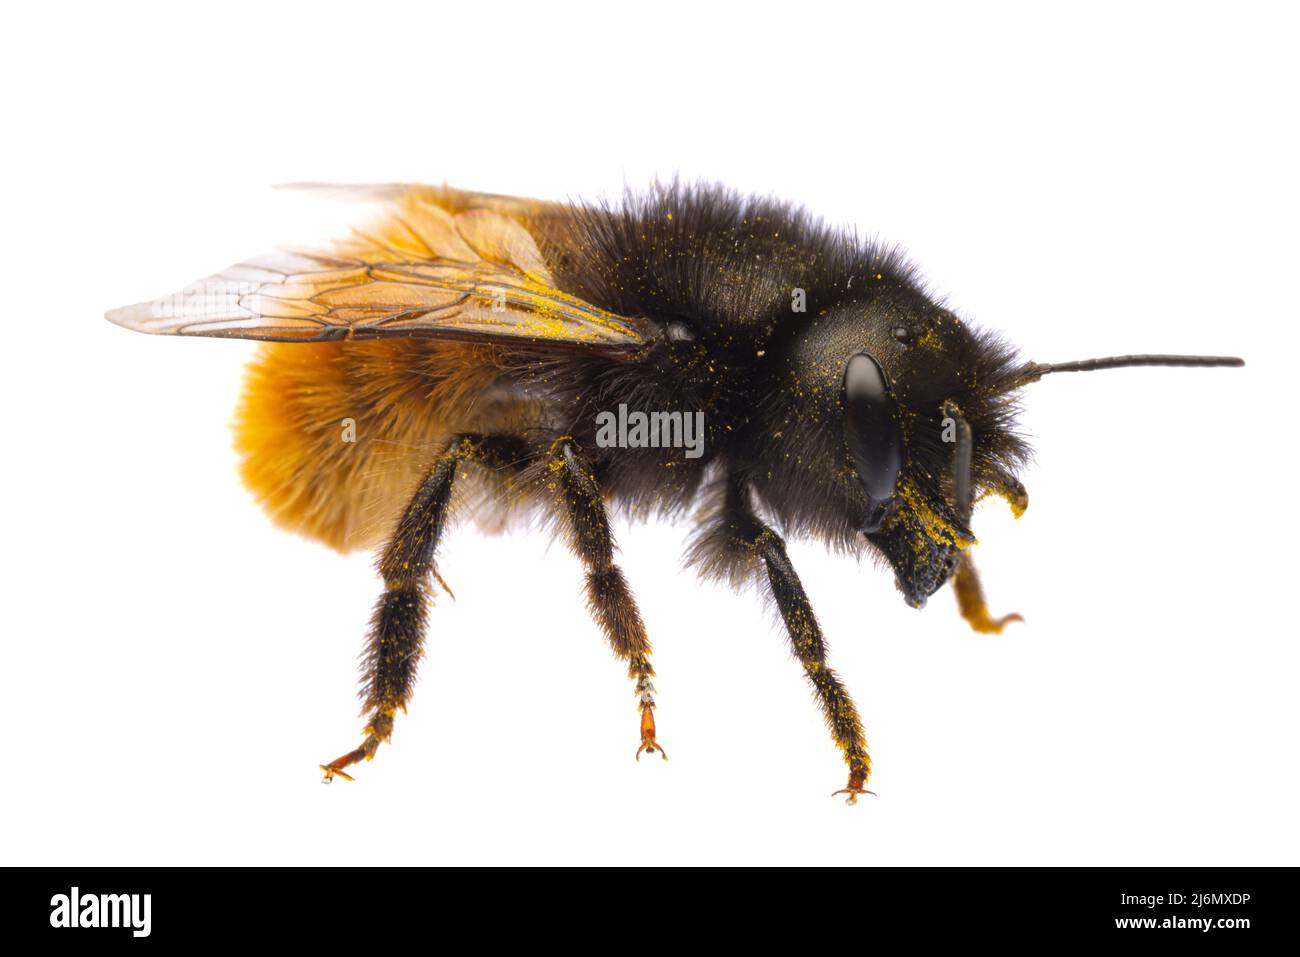 Insetti d'europa - api: Macro vista laterale della femmina Osmia cornuta ape europea di frutteto (tedesco Gehoernte Mauerbiene) isolato su sfondo bianco Foto Stock